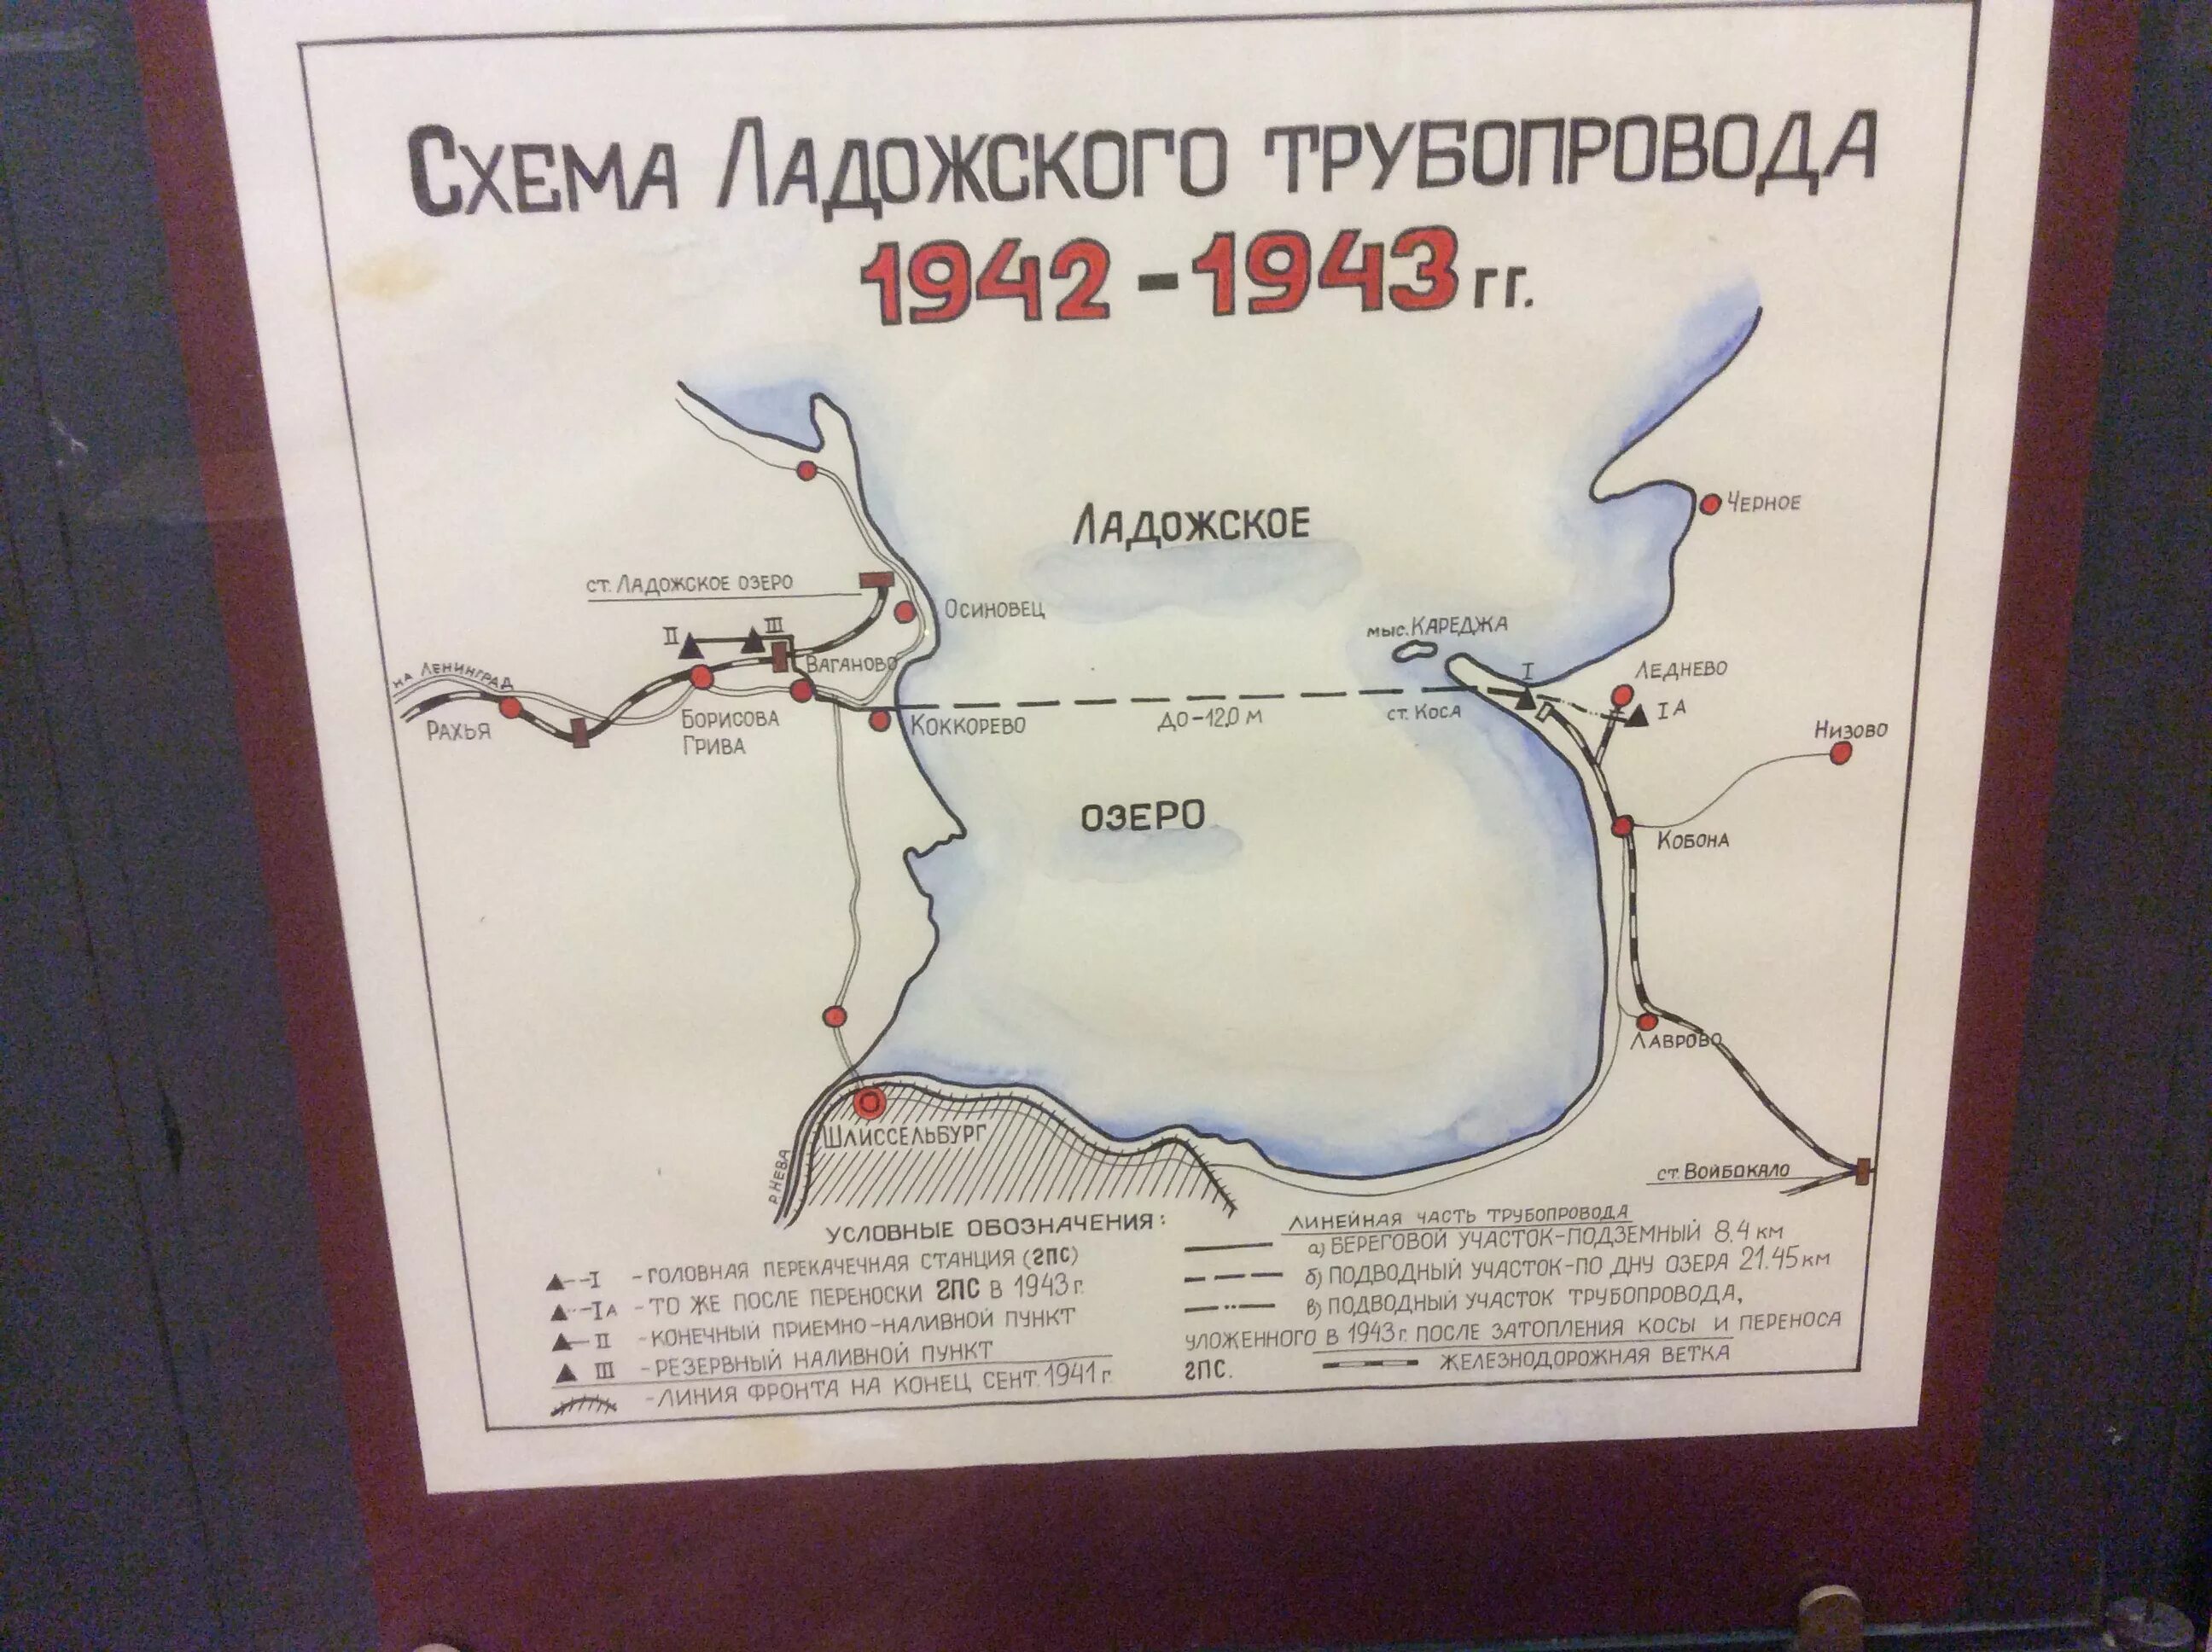 Трубопровод по дну Ладожского озера в 1942 году. Ладожское озеро блокада Ленинграда. Ладожское озеро 1942. Ладожский трубопровод 1942. По дну чего проложена артерия жизни